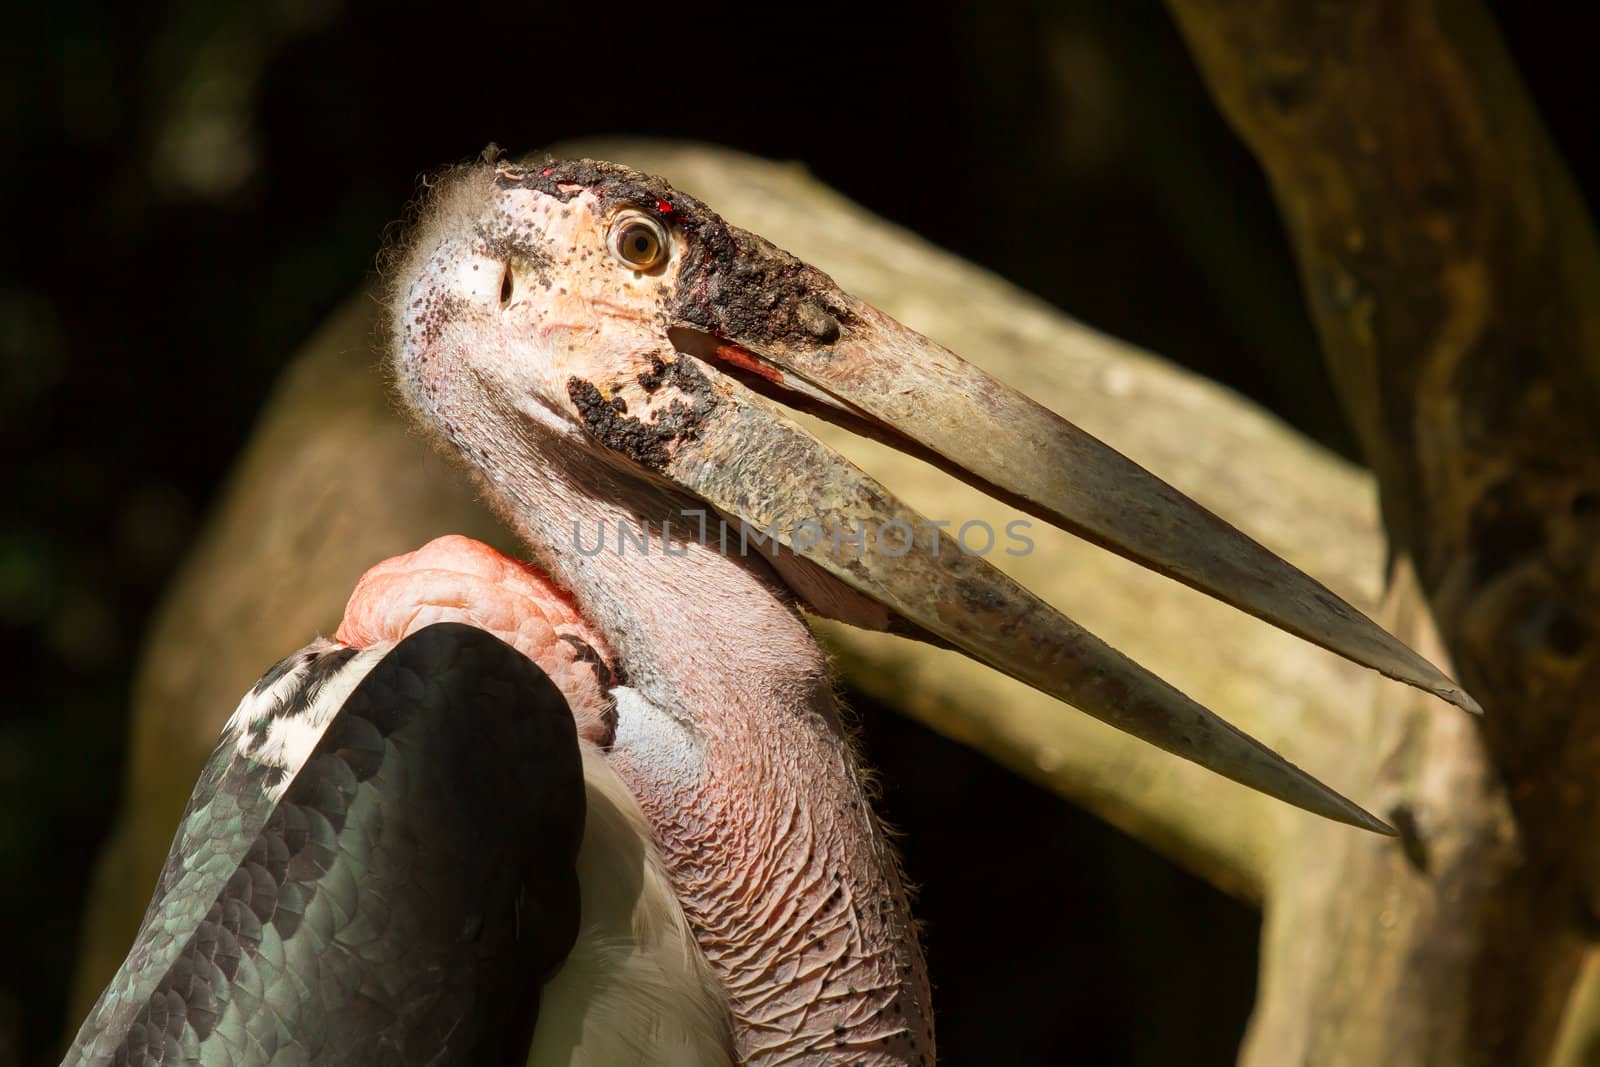 A close-up of an marabu  by michaklootwijk